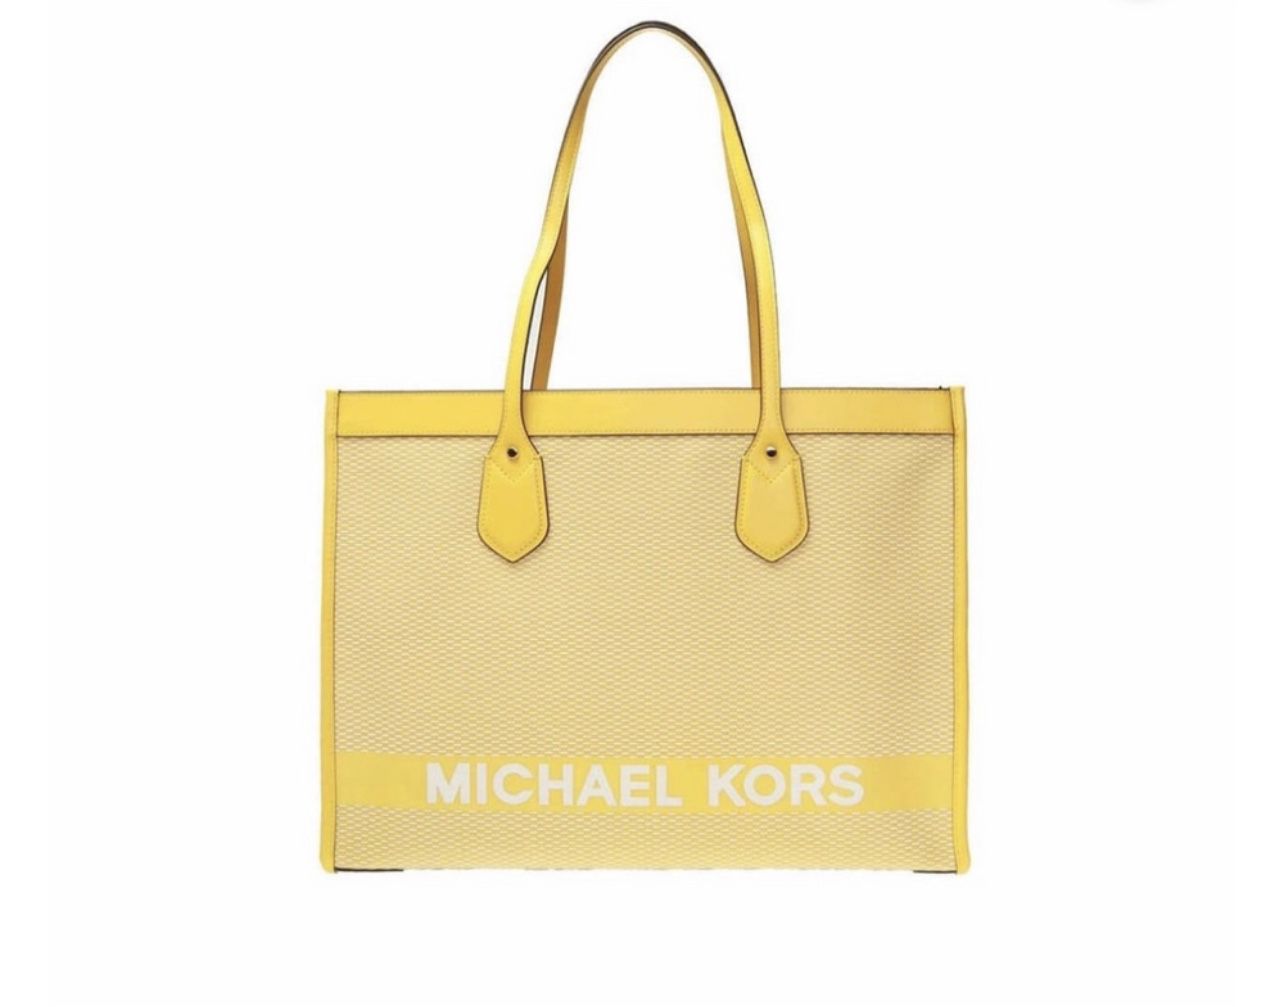 Michael Kors Tote Bag